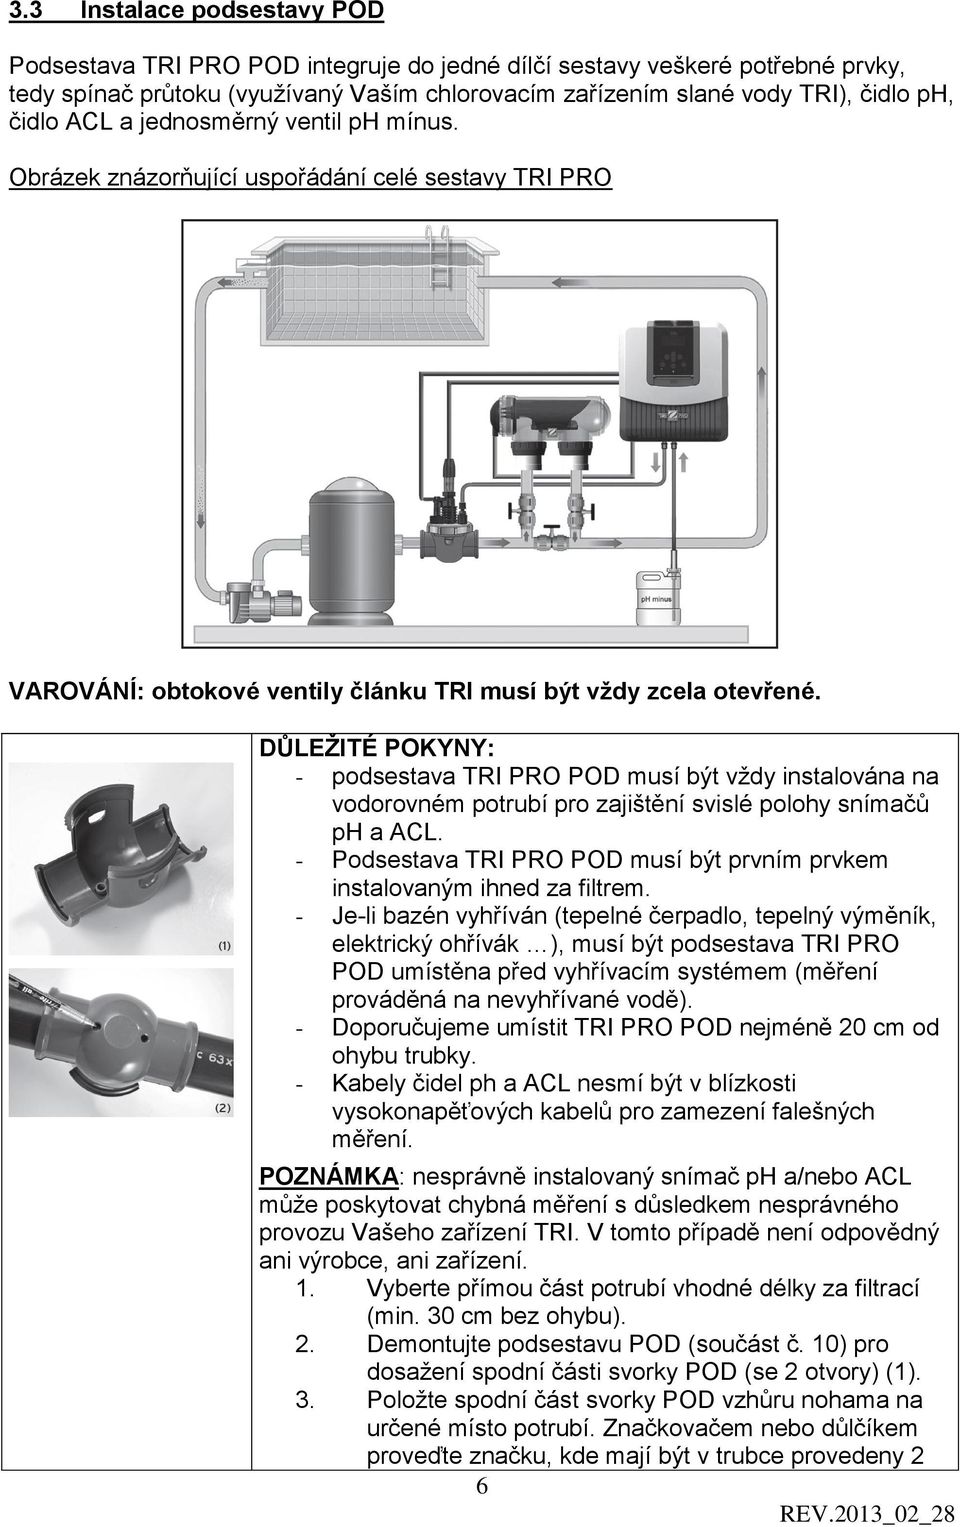 DŮLEŽITÉ POKYNY: - podsestava TRI PRO POD musí být vždy instalována na vodorovném potrubí pro zajištění svislé polohy snímačů ph a ACL.